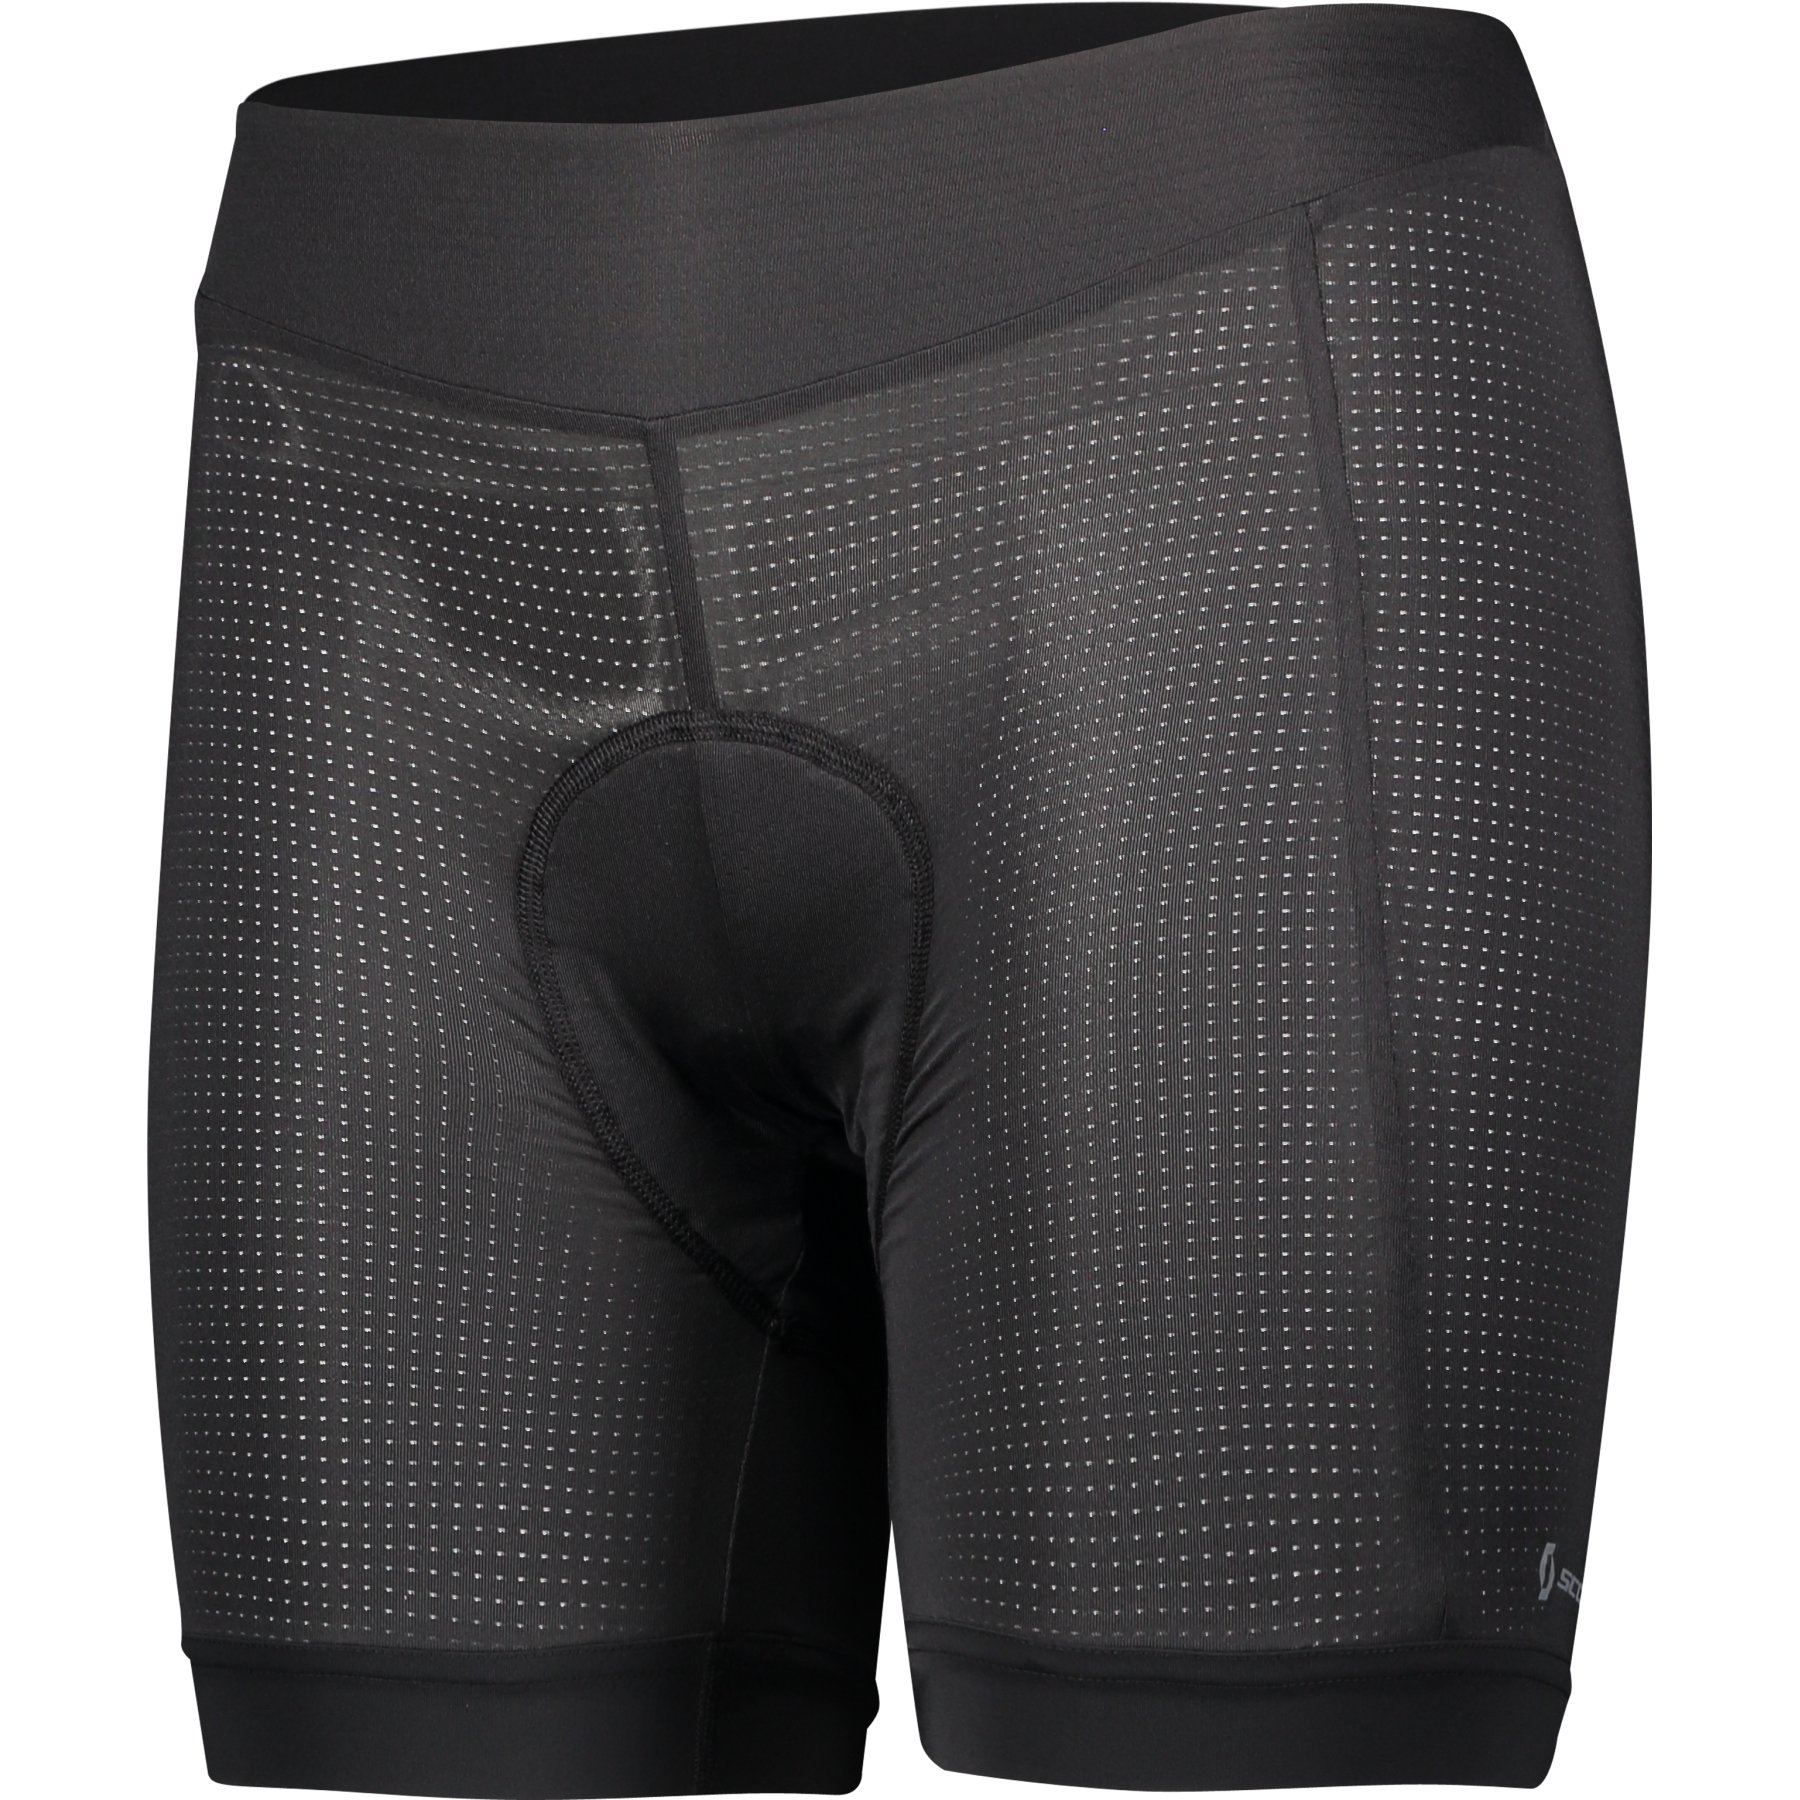 Produktbild von SCOTT Trail Underwear Pro +++ Damen Fahrrad-Unterhose - schwarz